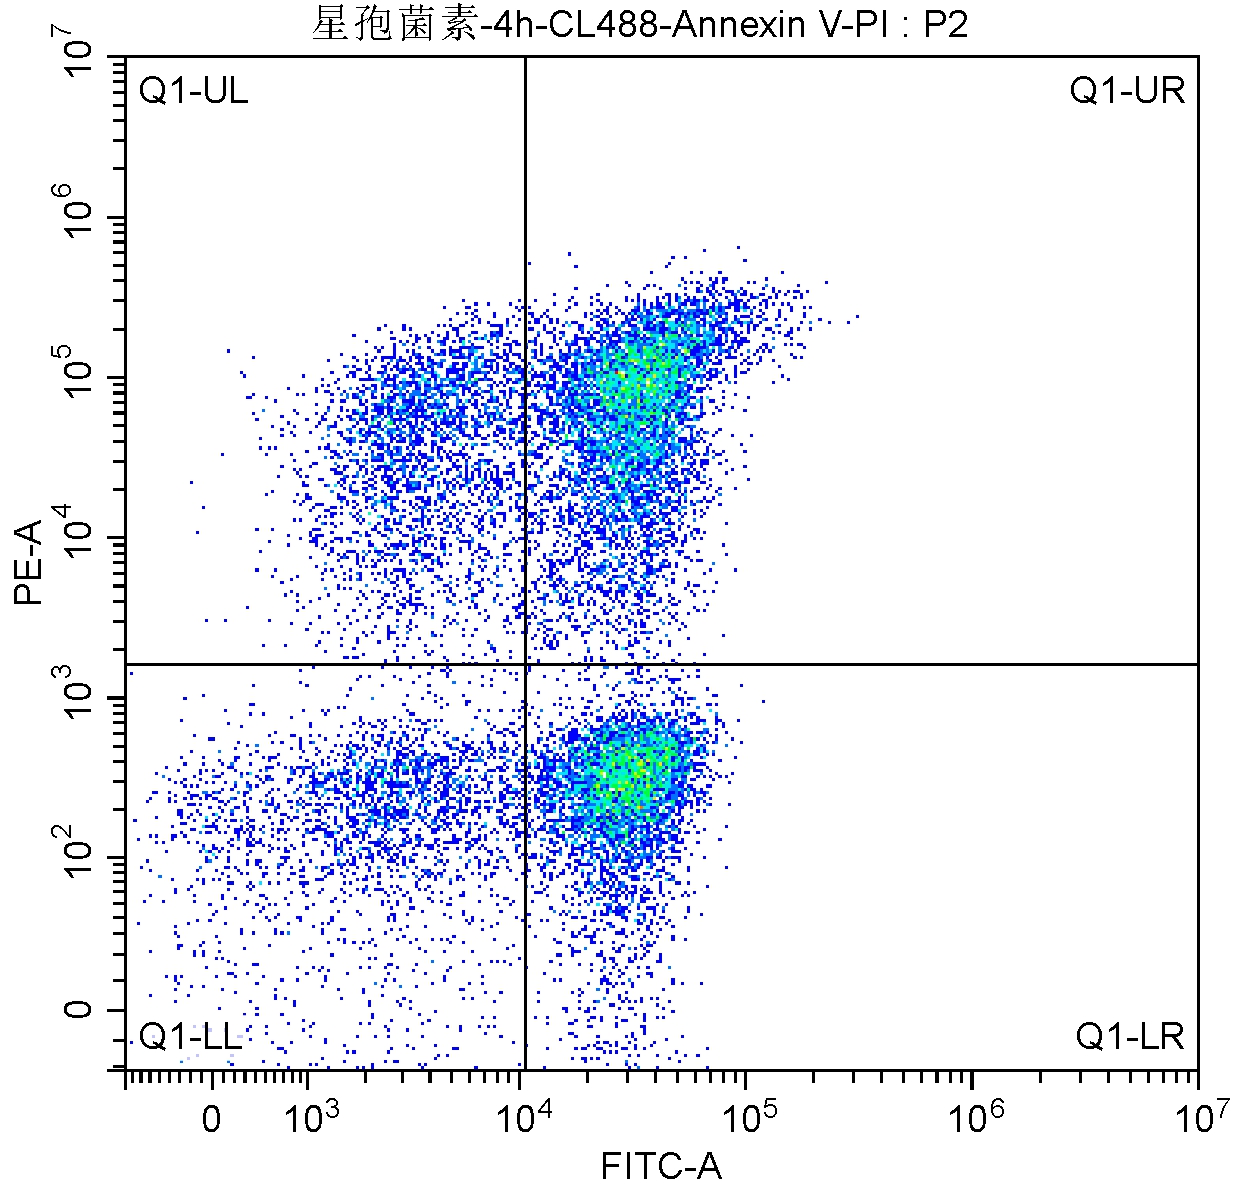 在SSC/FSC图中分析细胞群体:<br>X轴选择FITC-A,用来表示CL488-Annexin V。Y轴选择PE-A用来表示 。<br><br>上图中各个区域的含义：<br>Q1-UL：(CL488-Annexin V)-/PI+，此区域的细胞为坏死细胞。也可能有少数的晚期凋亡细胞在其中，甚至机械损伤的细胞也包含其中。<br>Q1-UR：(CL488-Annexin V)+/PI+，此区域的细胞为晚期凋亡细胞。<br>Q1-LR：(CL488-Annexin V)+/PI-，此区域的细胞为早期凋亡细胞。<br>Q1-LL：(CL488-Annexin V)-/PI-，此区域的细胞为活细胞。<br>通常统计细胞凋亡率时采用Q1-UR+Q1-LR，晚期凋亡＋早期凋亡群（即所有Annexin V阳性群）。